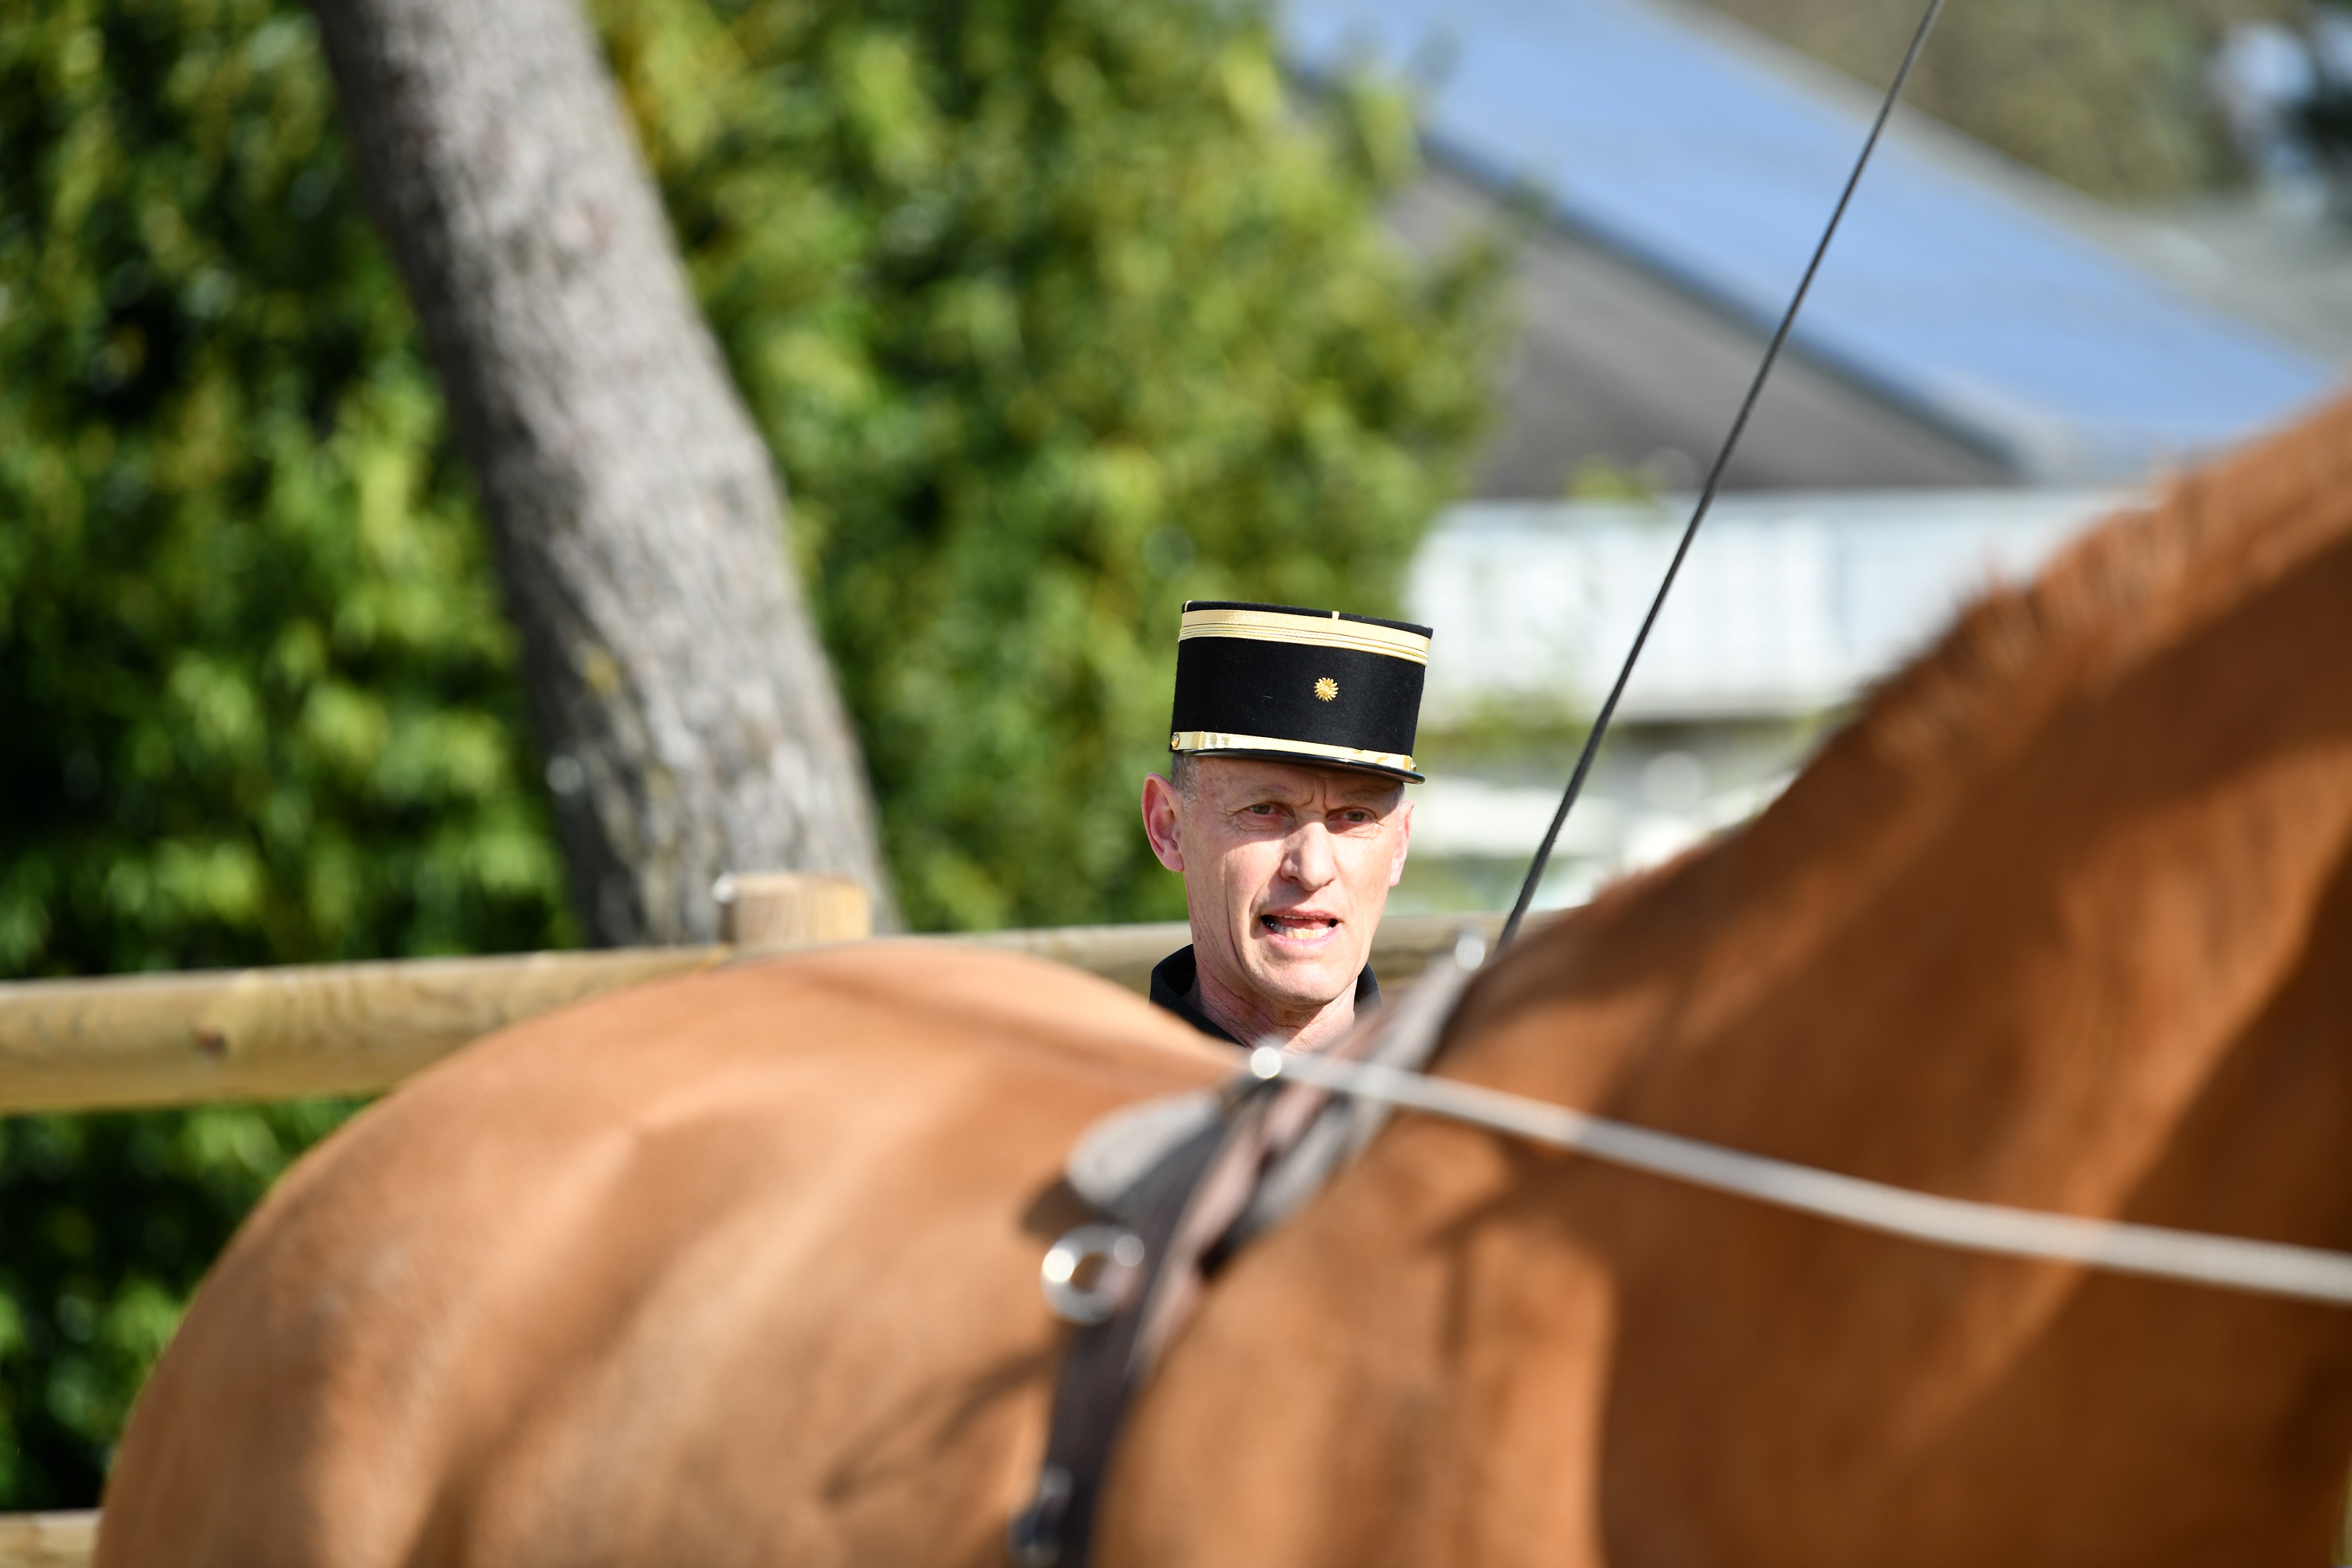 Le livre du nouvel enseignant d'équitation: Une pédagogie durable au  service des cavaliers et des chevaux (French Edition)